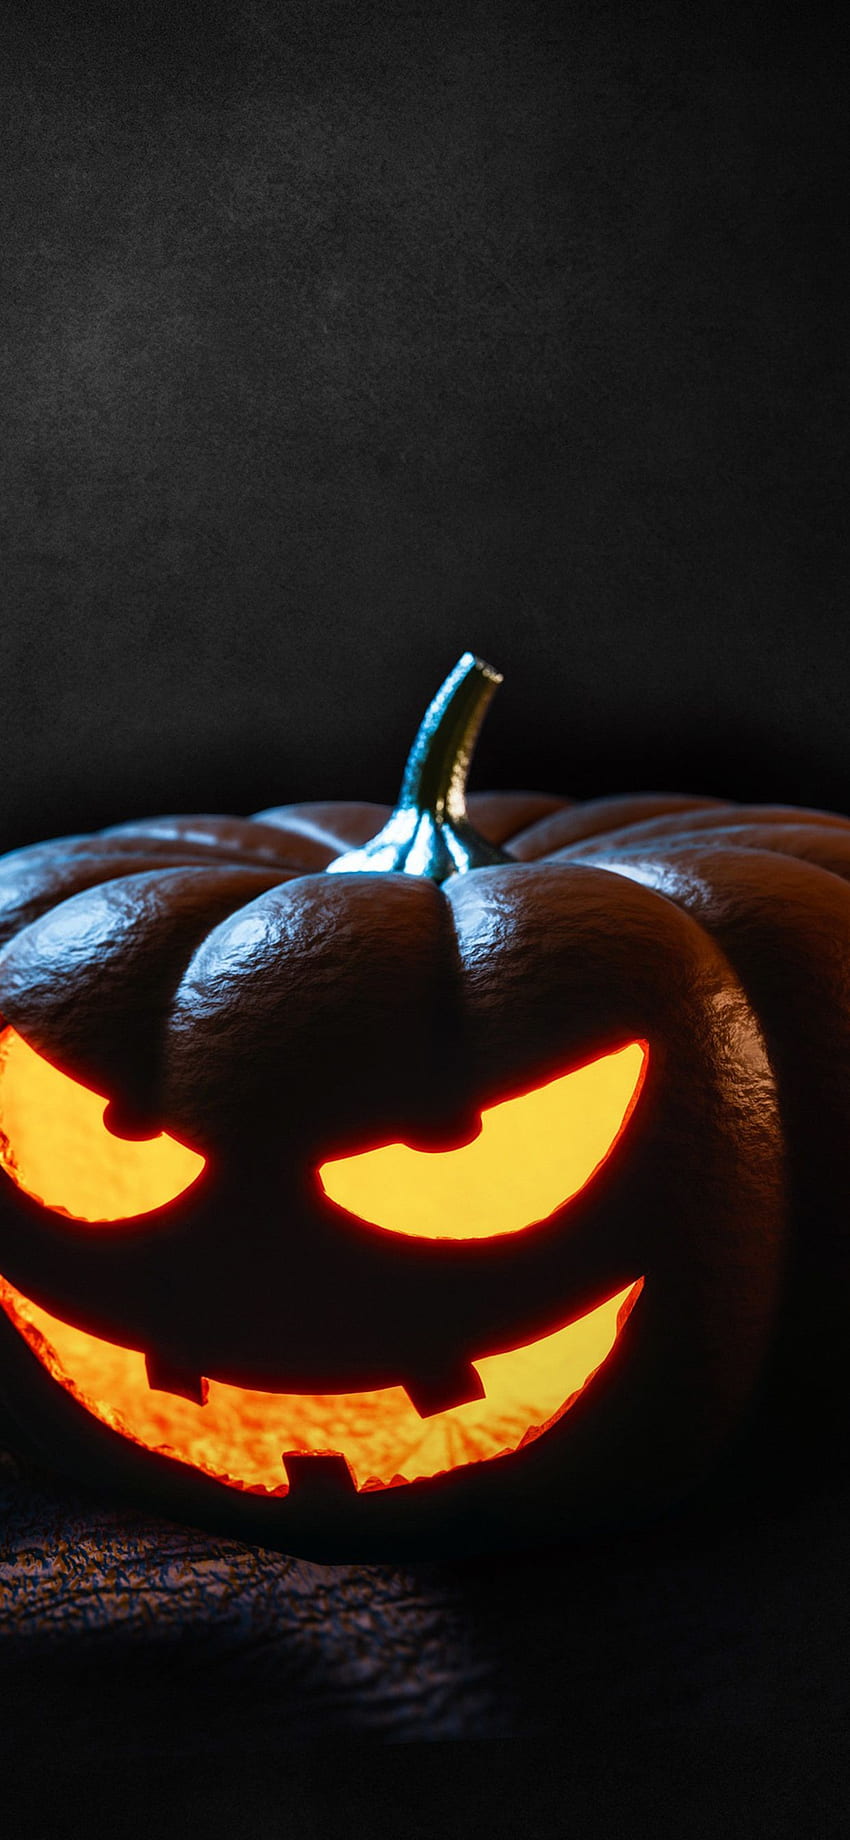 Halloween đang đến gần, hãy tìm hiểu một số hình nền halloween tuyệt đẹp để tôn vinh một trong những lễ hội đặc biệt trong năm. Những hình ảnh về ma quỷ, quái vật, và những chiếc bí ngô sẽ khiến bạn phấn khích và rùng mình.